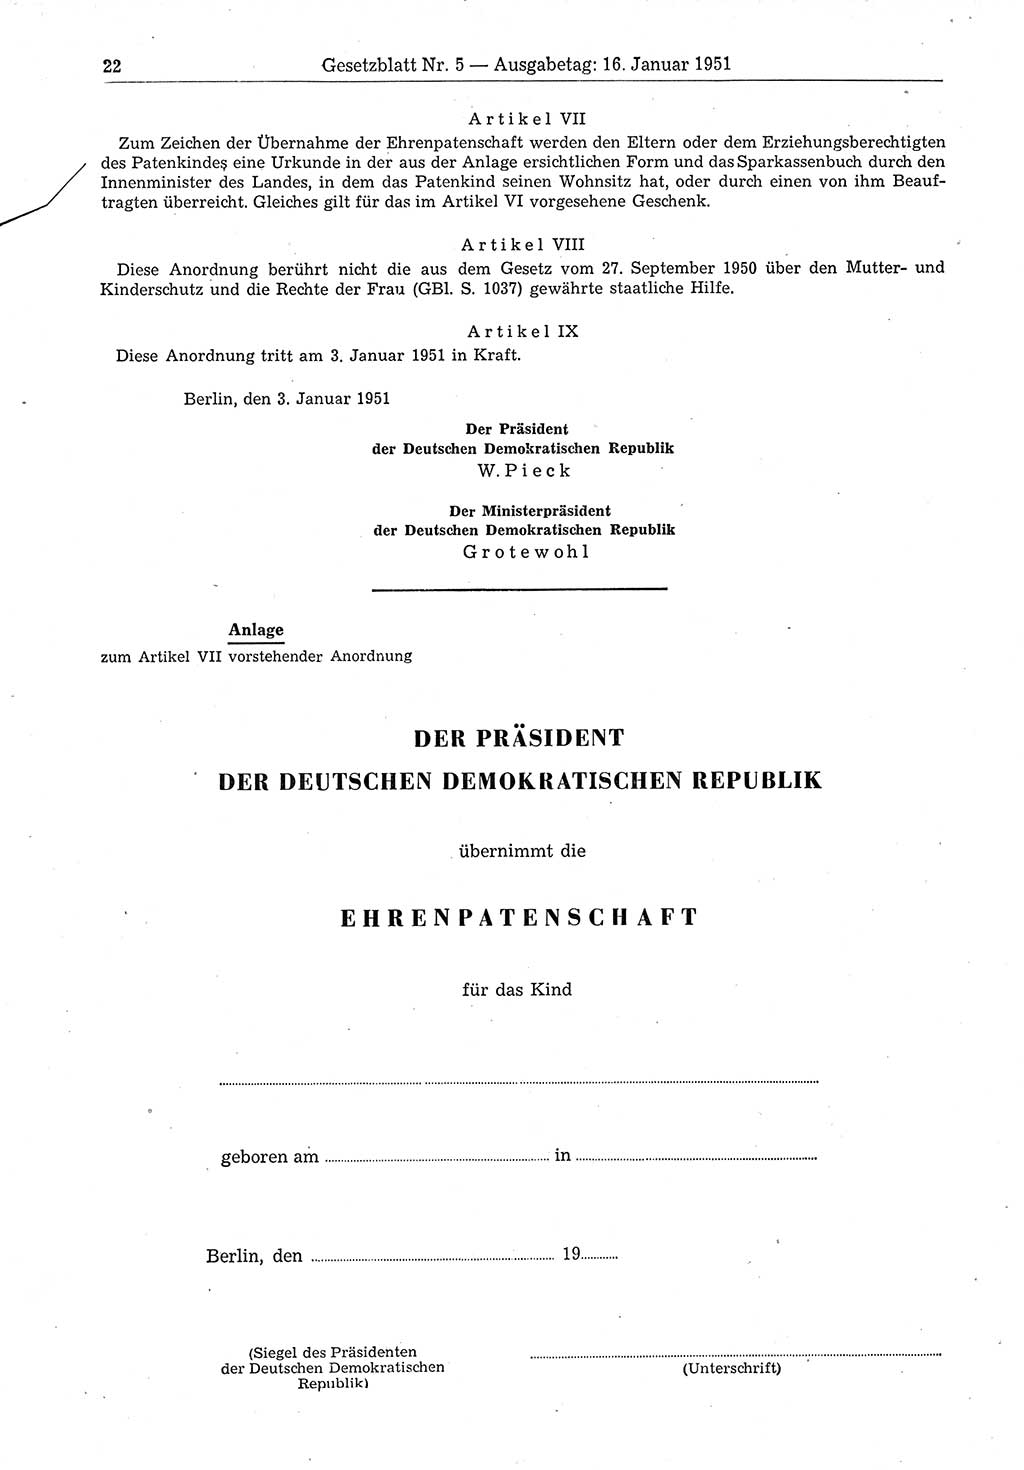 Gesetzblatt (GBl.) der Deutschen Demokratischen Republik (DDR) 1951, Seite 22 (GBl. DDR 1951, S. 22)